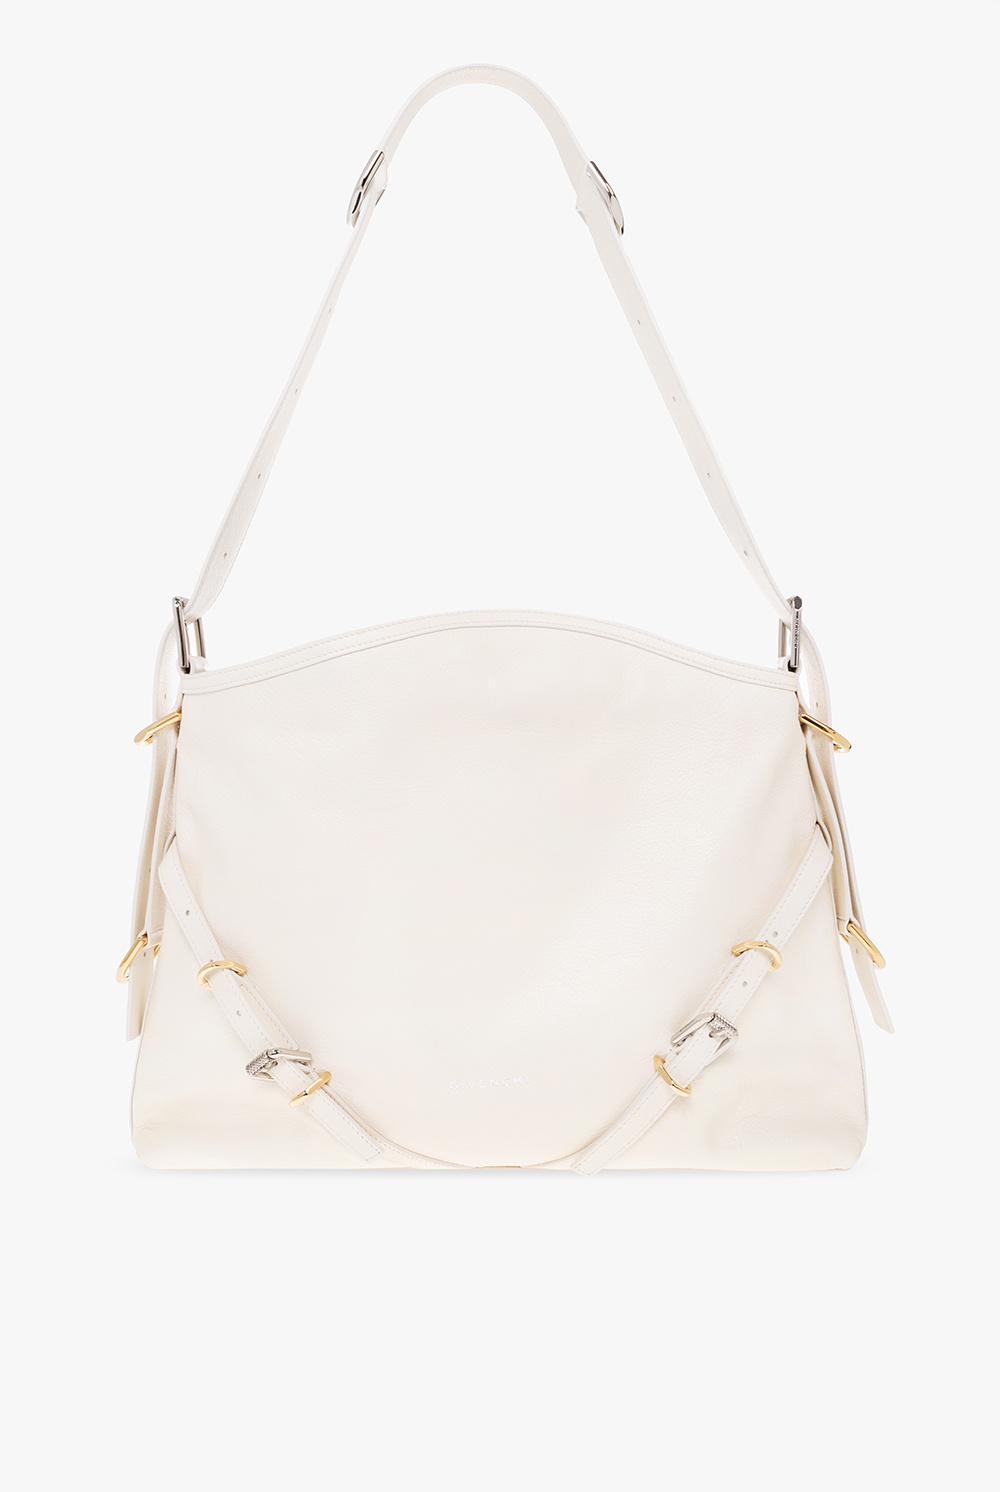 Givenchy ‘Voyou Medium’ shoulder bag